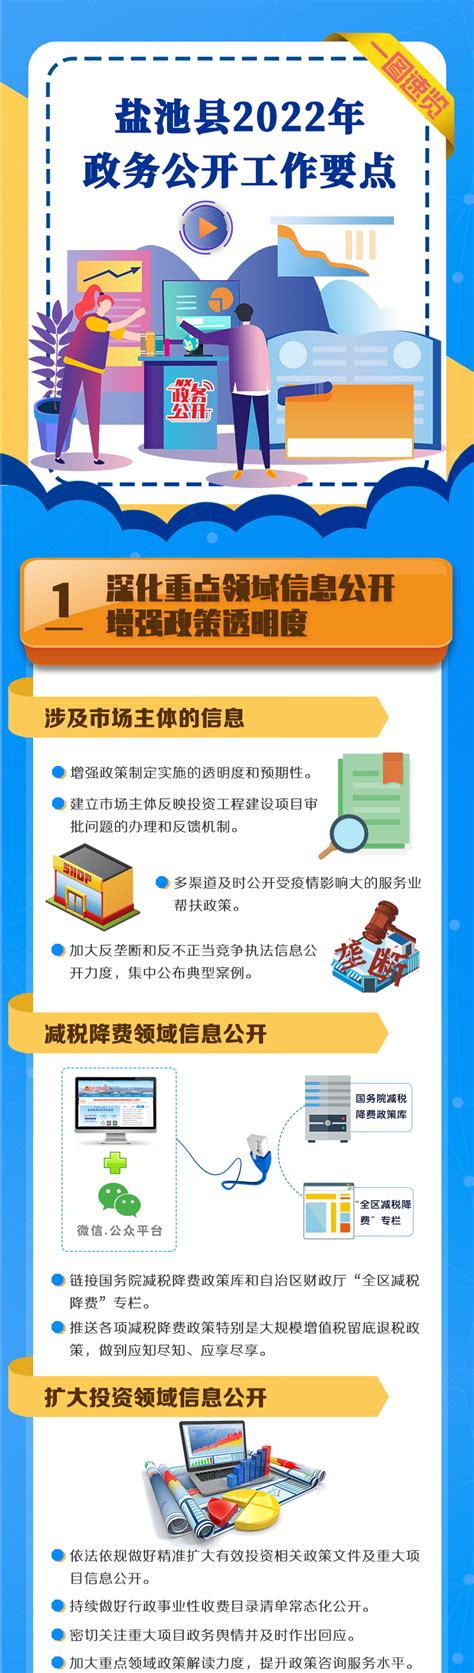 宁夏盐池：医疗信息化助力提升全民健康水平-宁夏新闻网